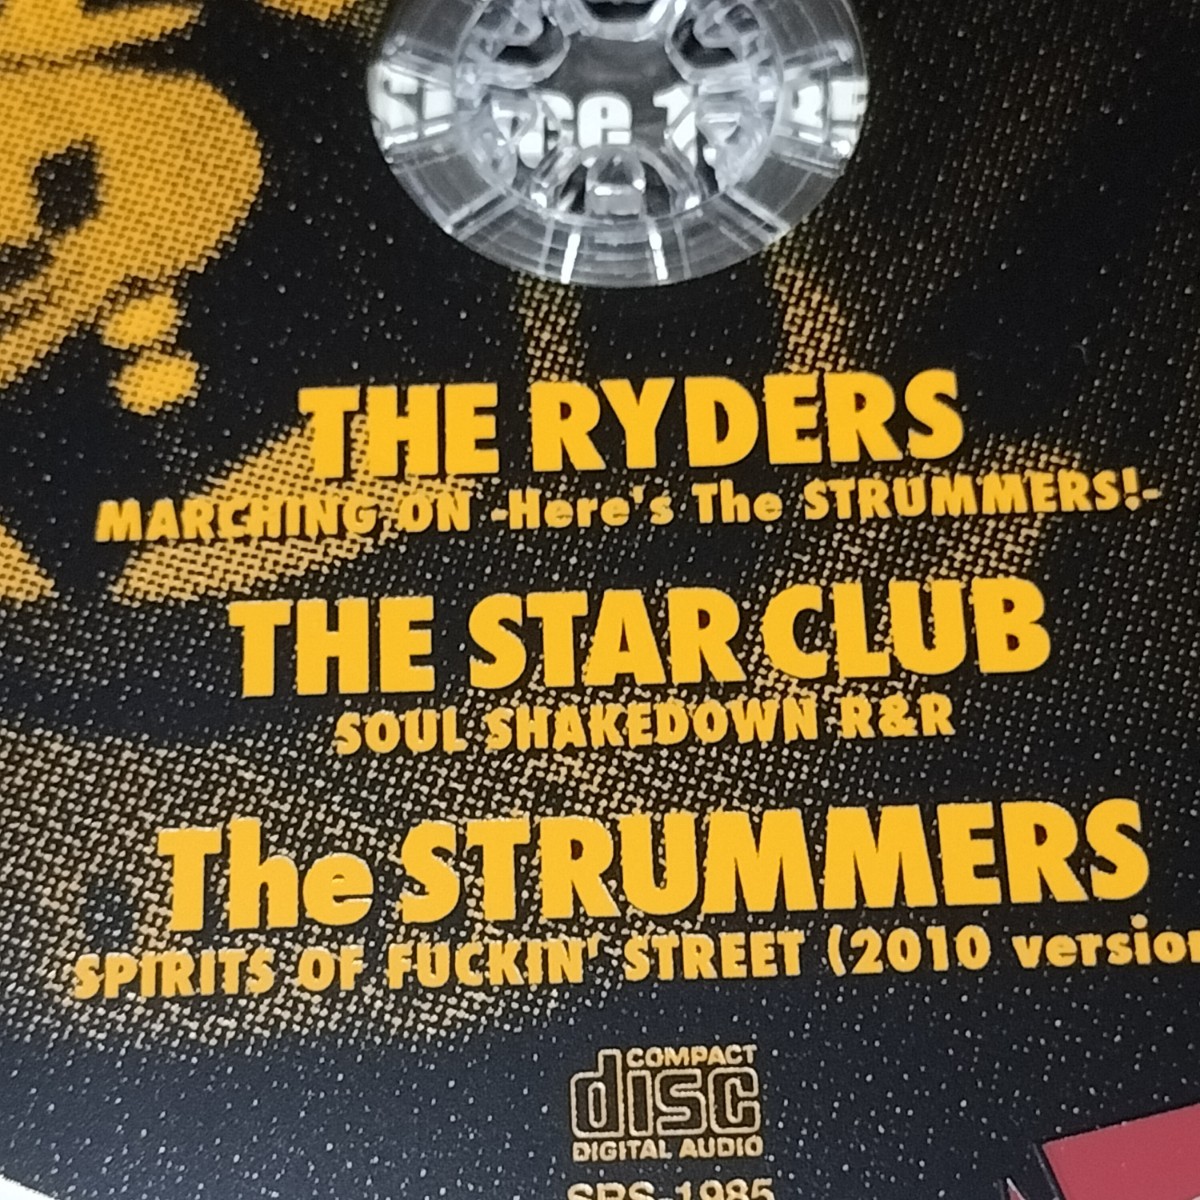 THE STRUMMERS 限定 CD 「ワイルドサイドを突っ走れ」 ストラマーズ WOL THE STAR CLUB スタークラブPUNK パンク ZETT RYDERS ライダーズ _画像4